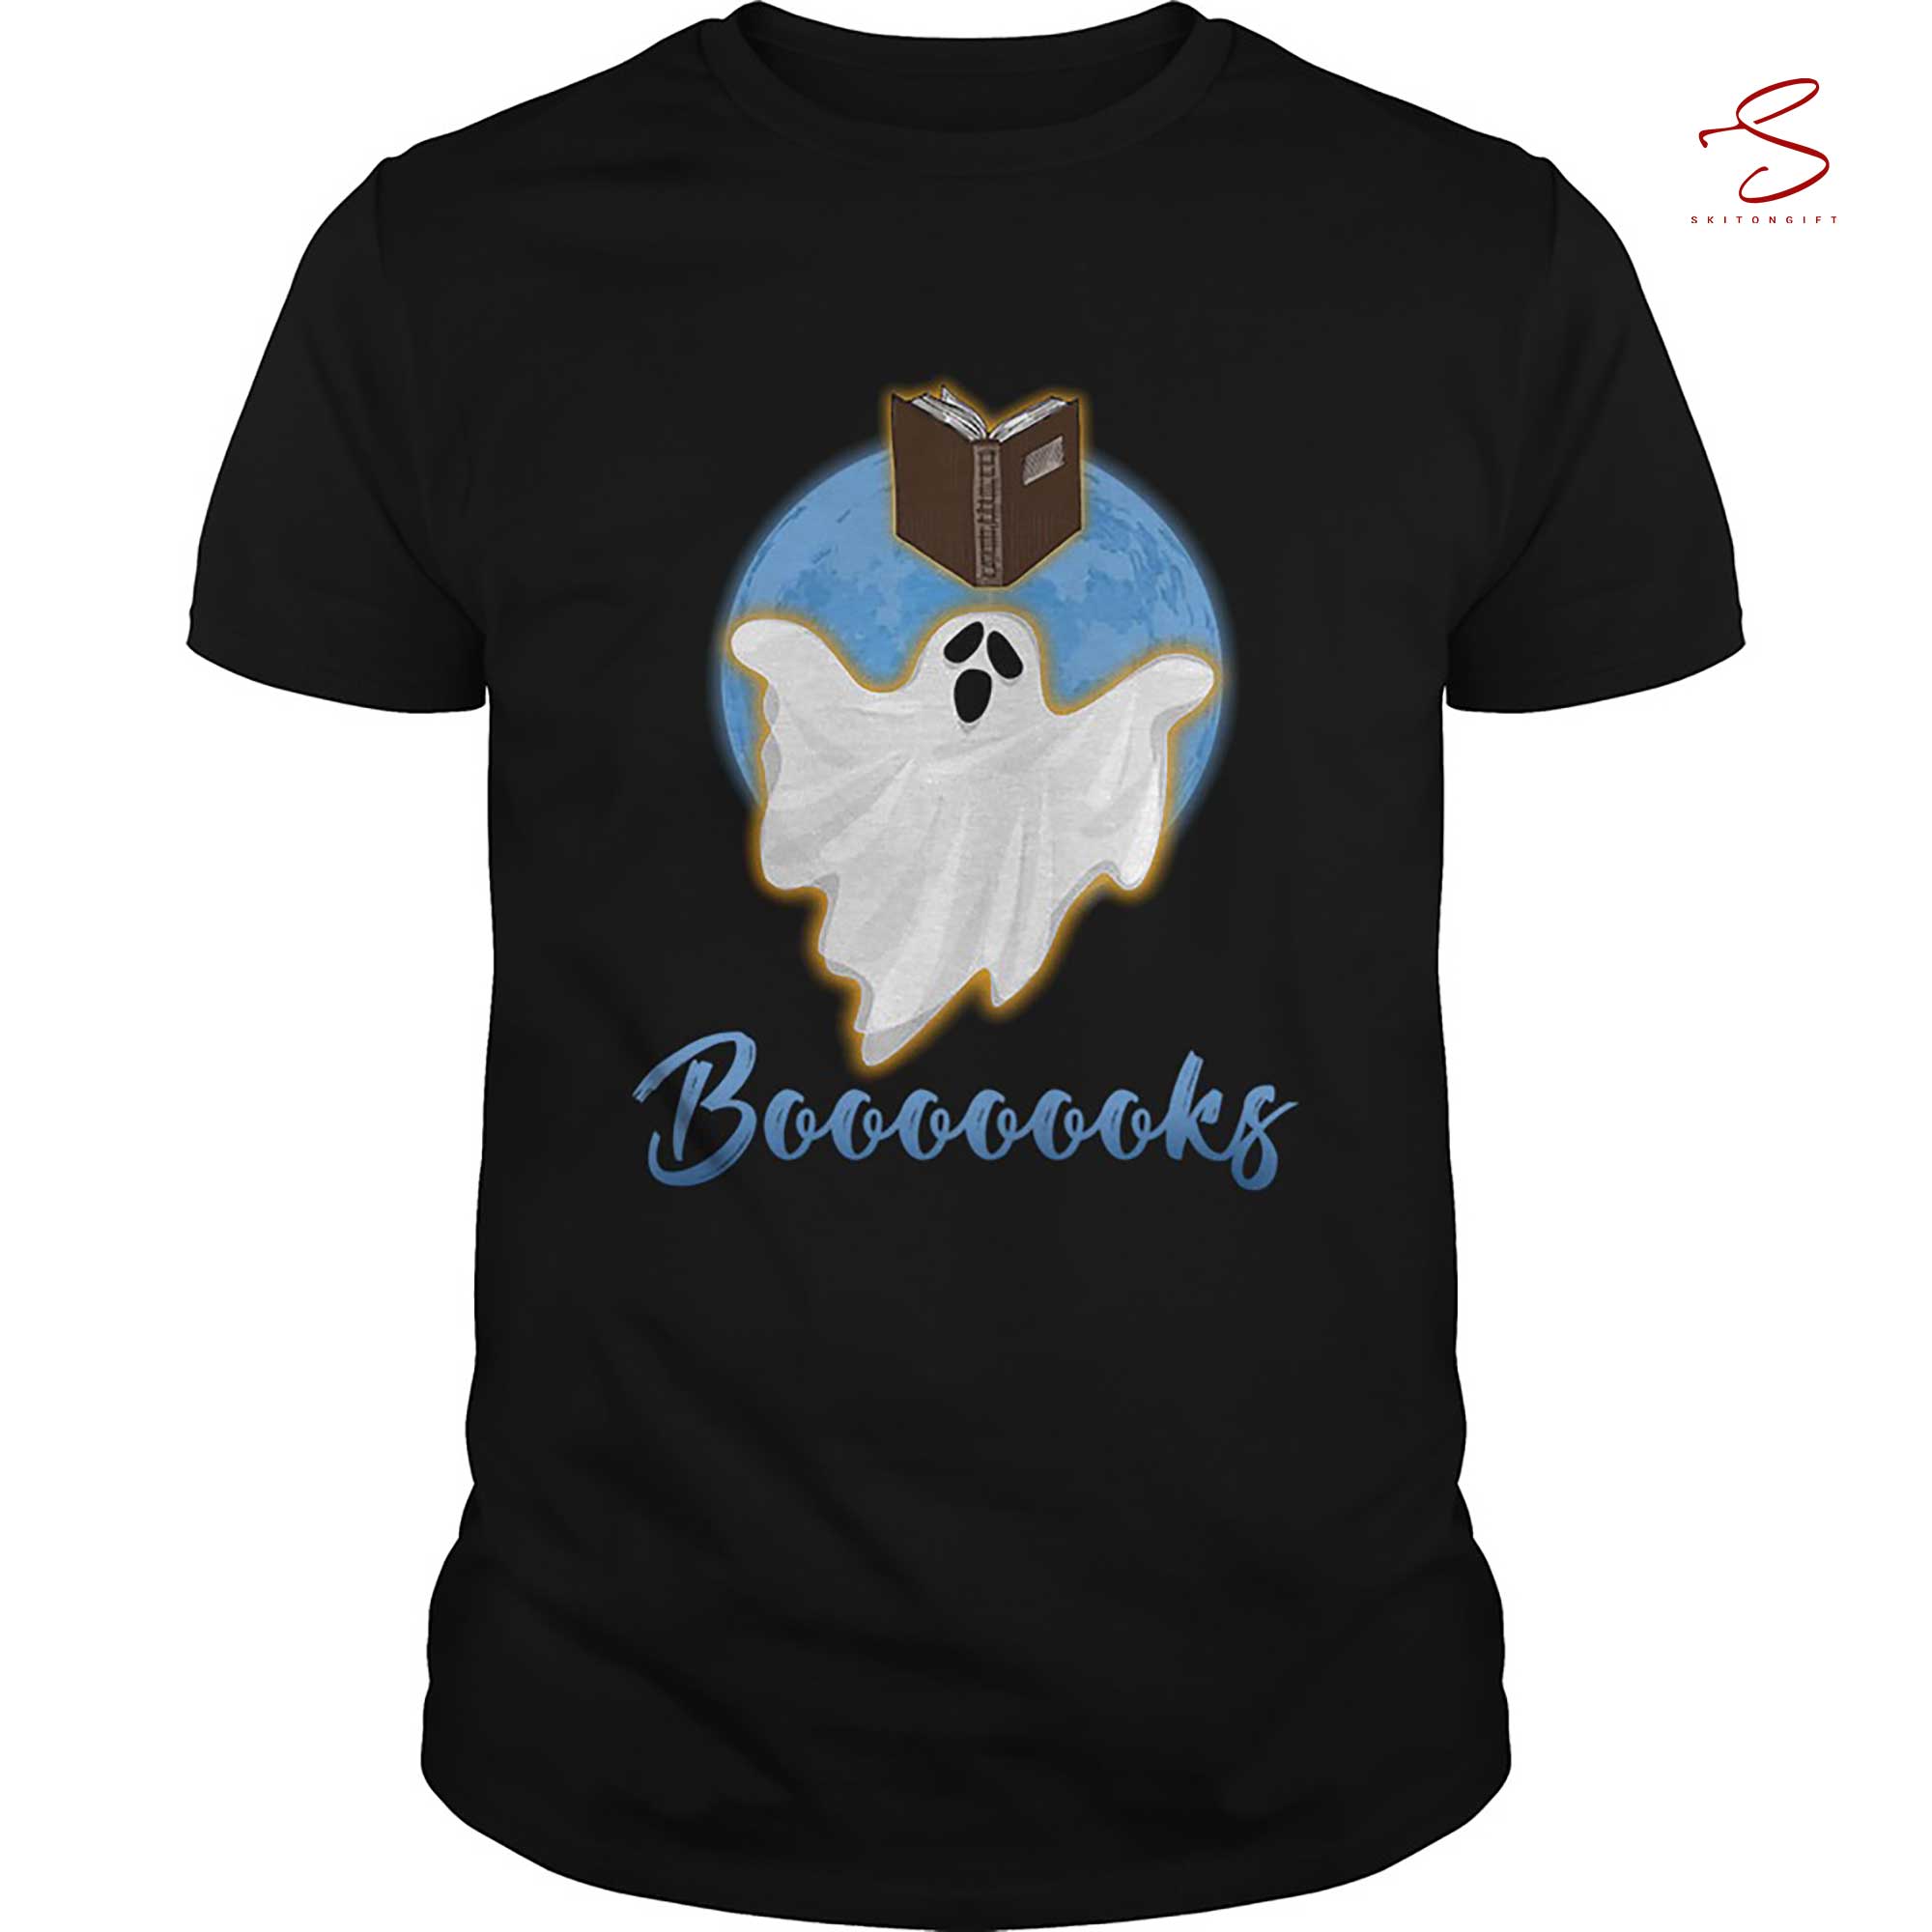 Skitongift Halloween Boooks Book Lover T Shirt